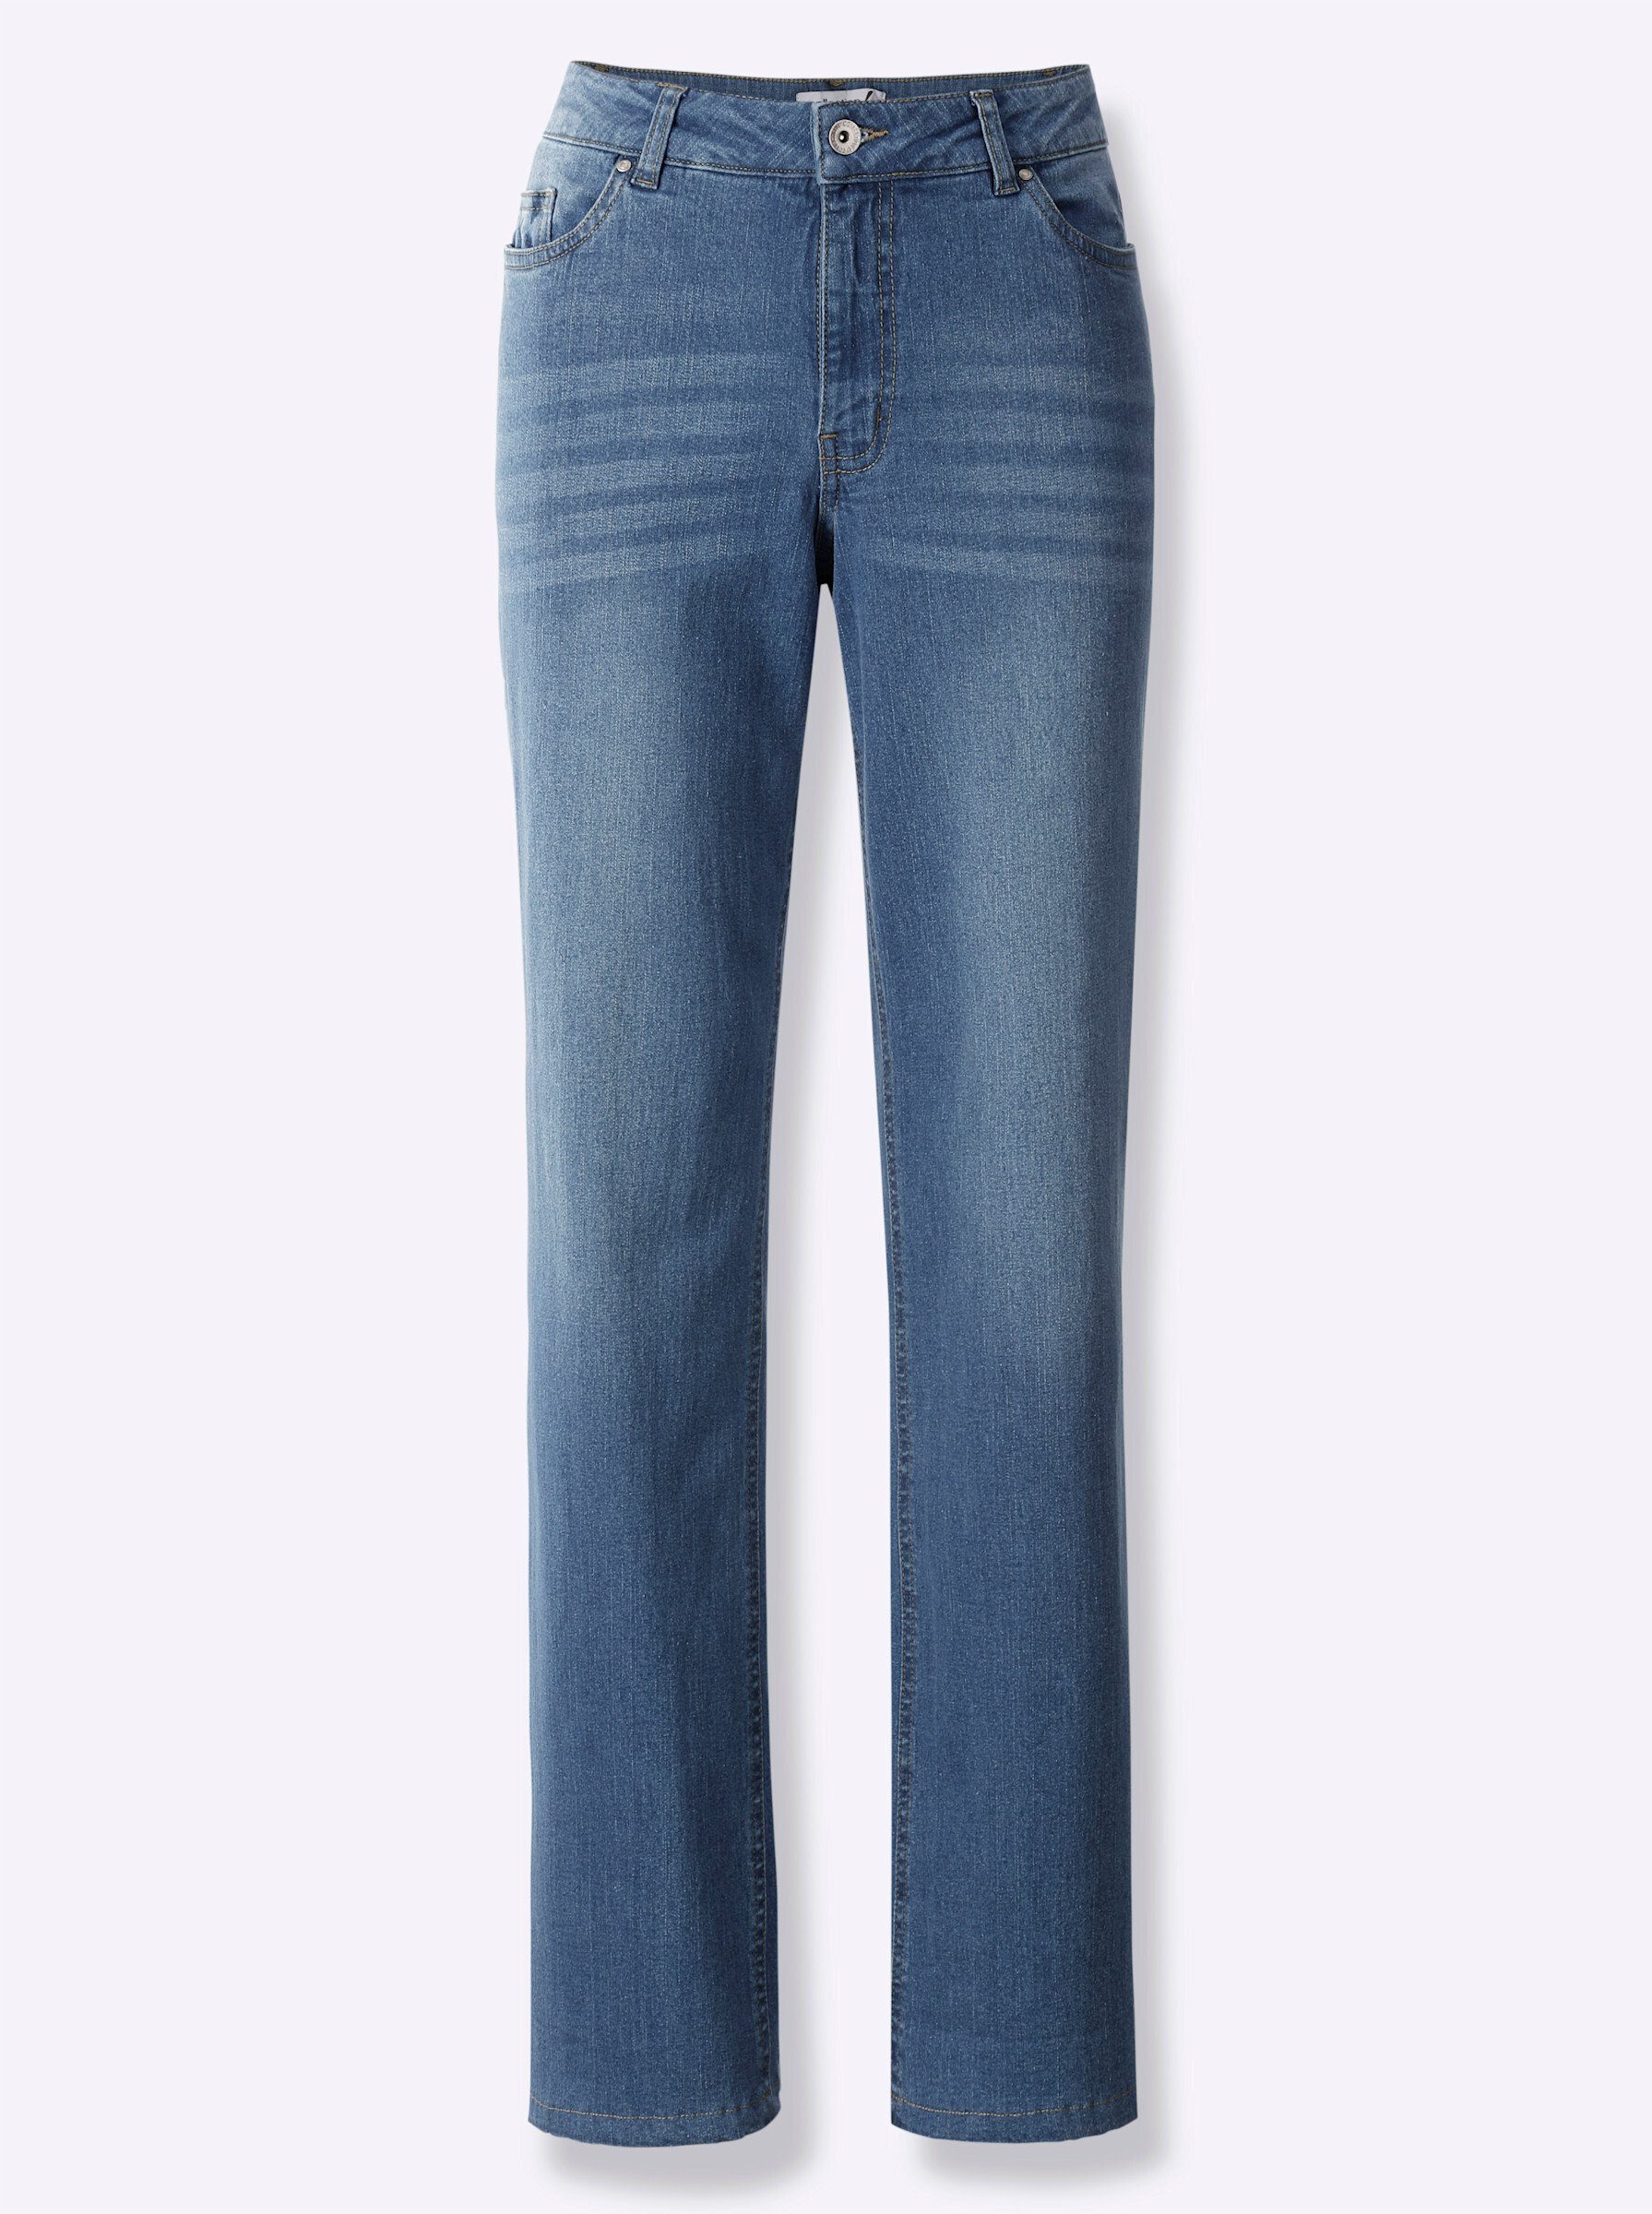 Jeans WITT blue-bleached Bequeme WEIDEN